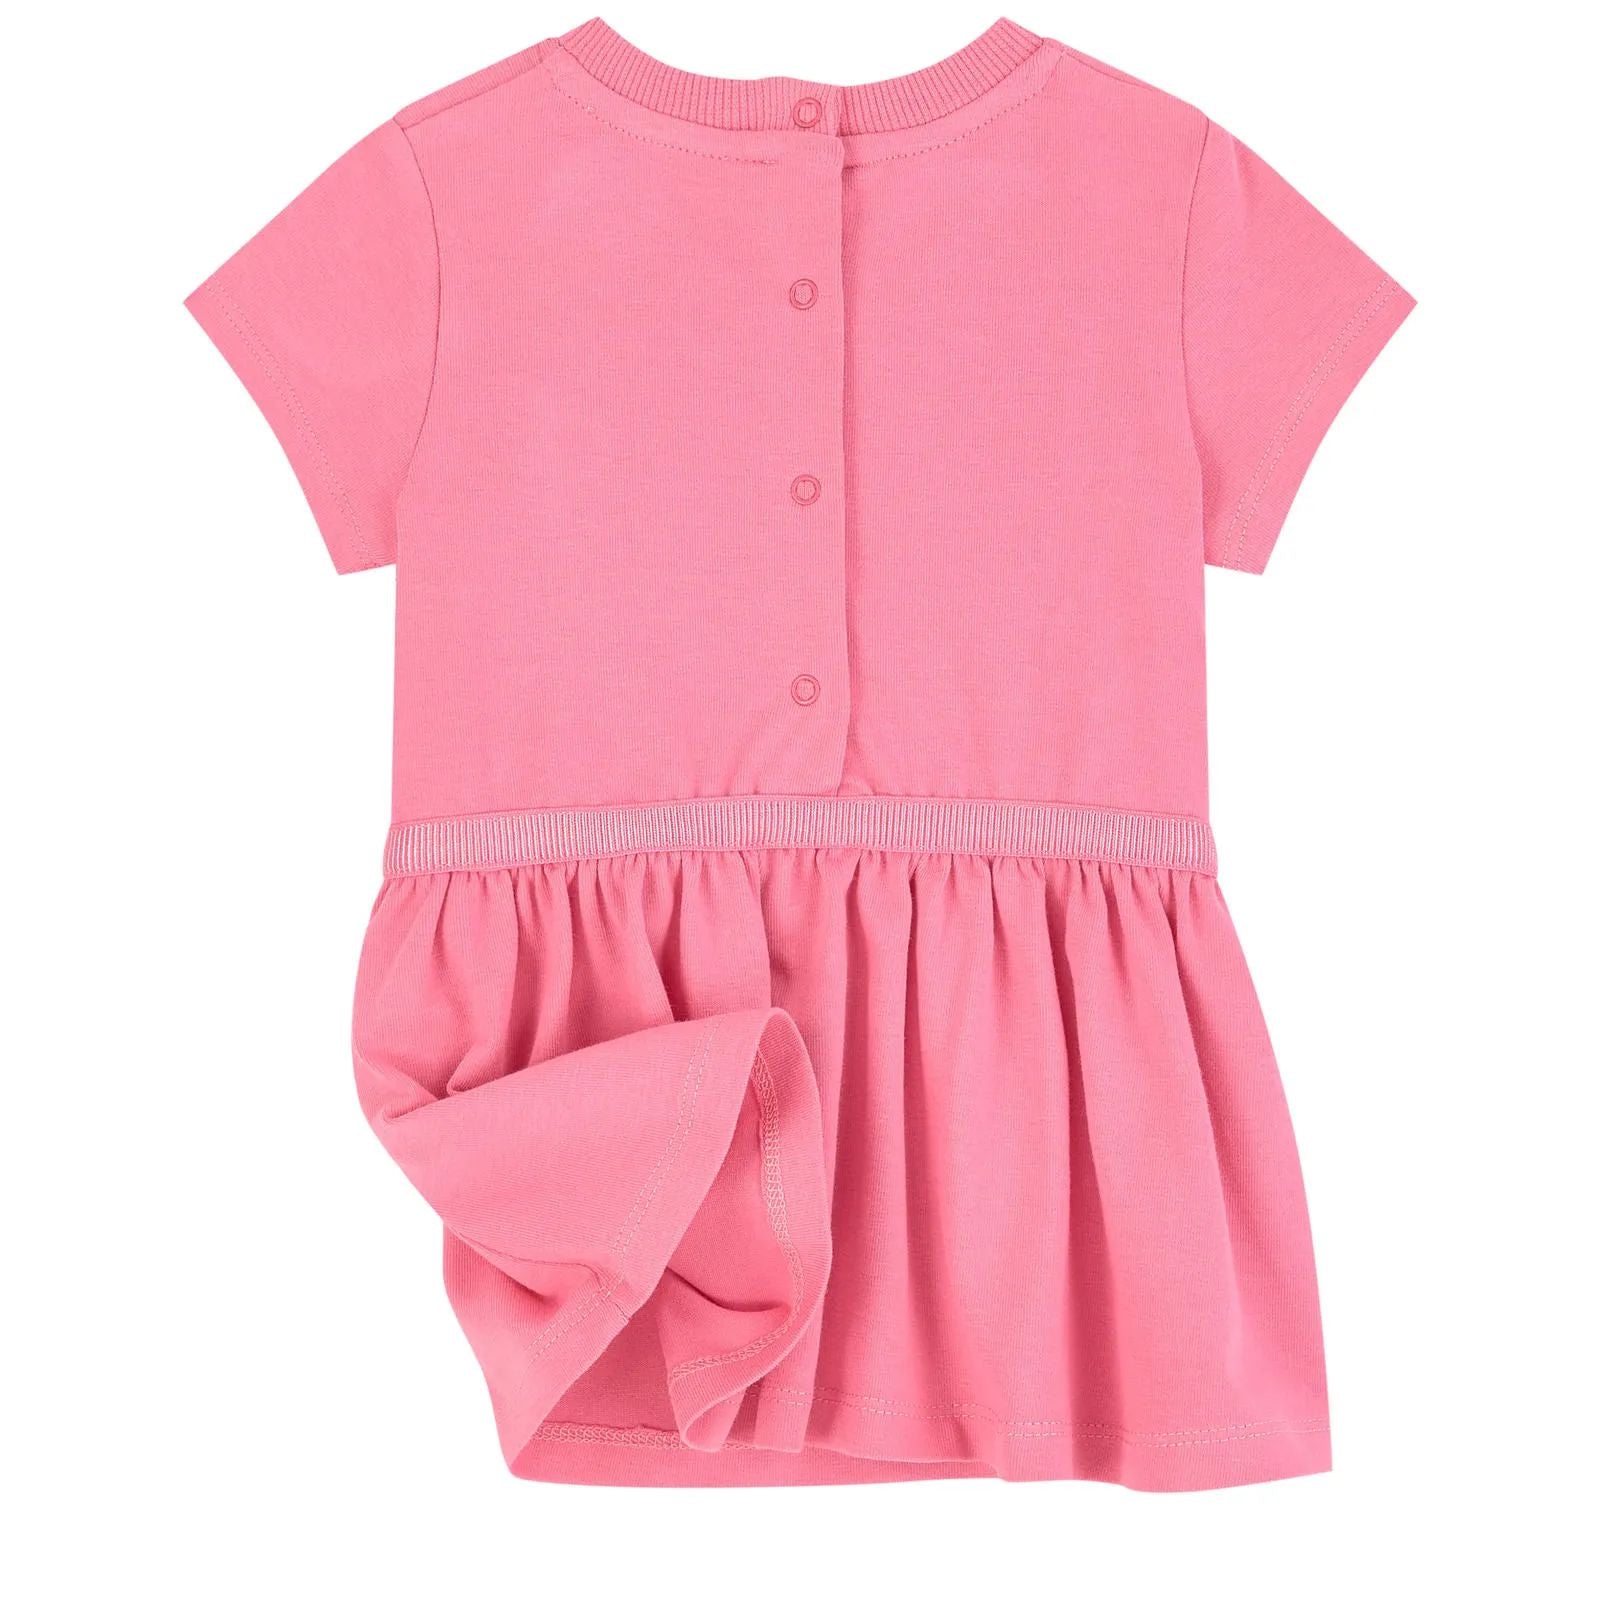 Baby Girls Dark Pink Cotton Dress